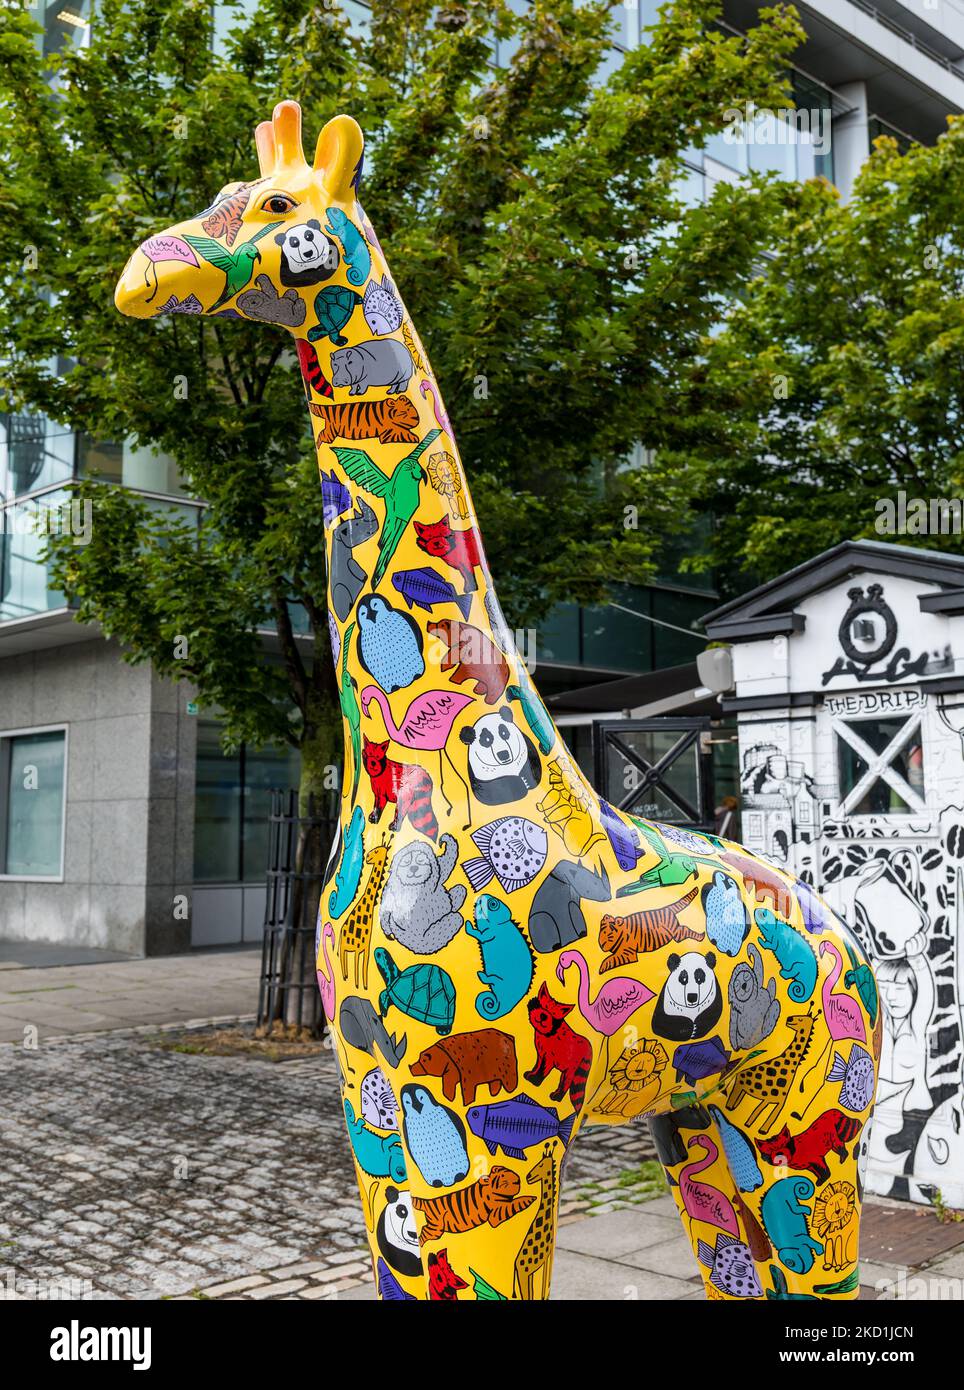 Une girafe peinte dans la rue Giraffe About Town Wild in Art event, Édimbourg, Écosse, Royaume-Uni Banque D'Images